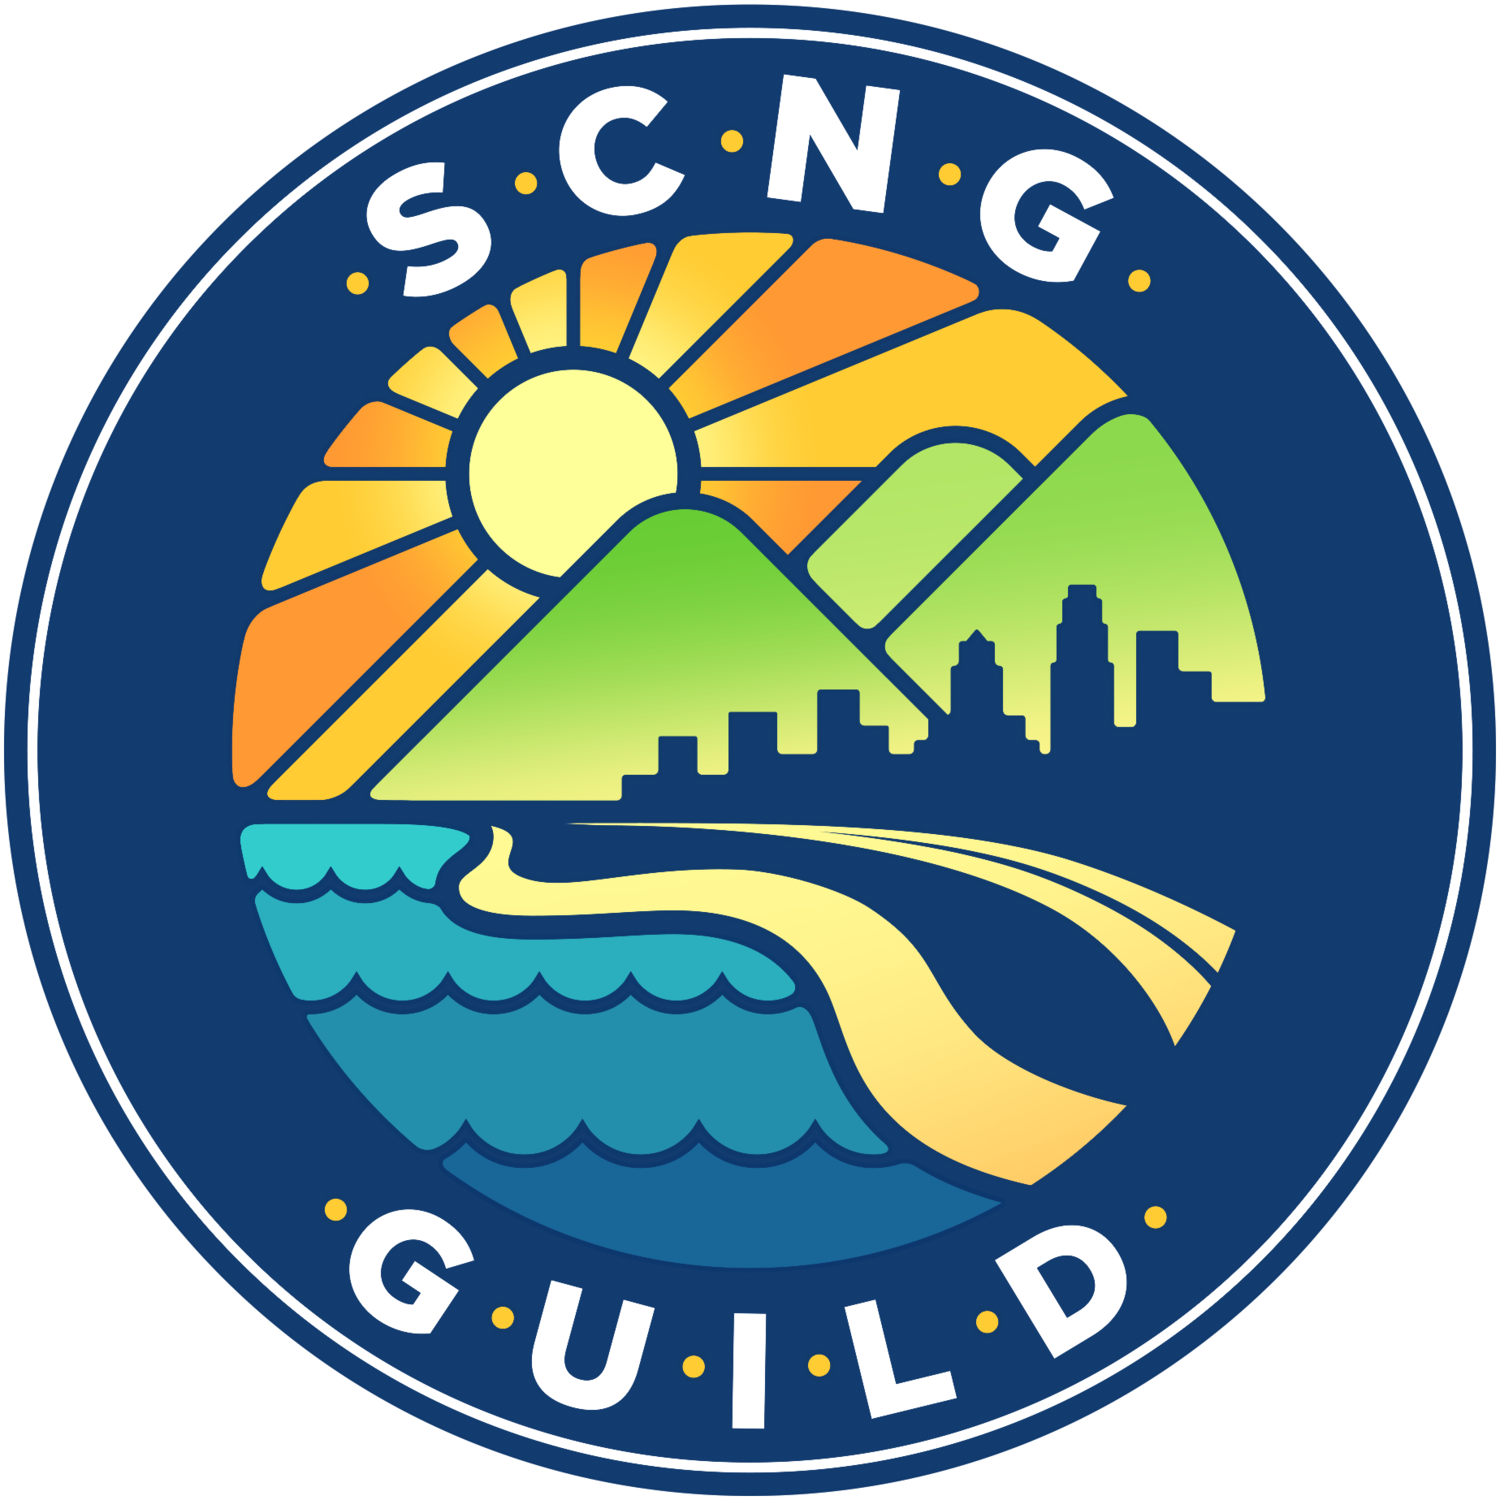 SCNG Guild